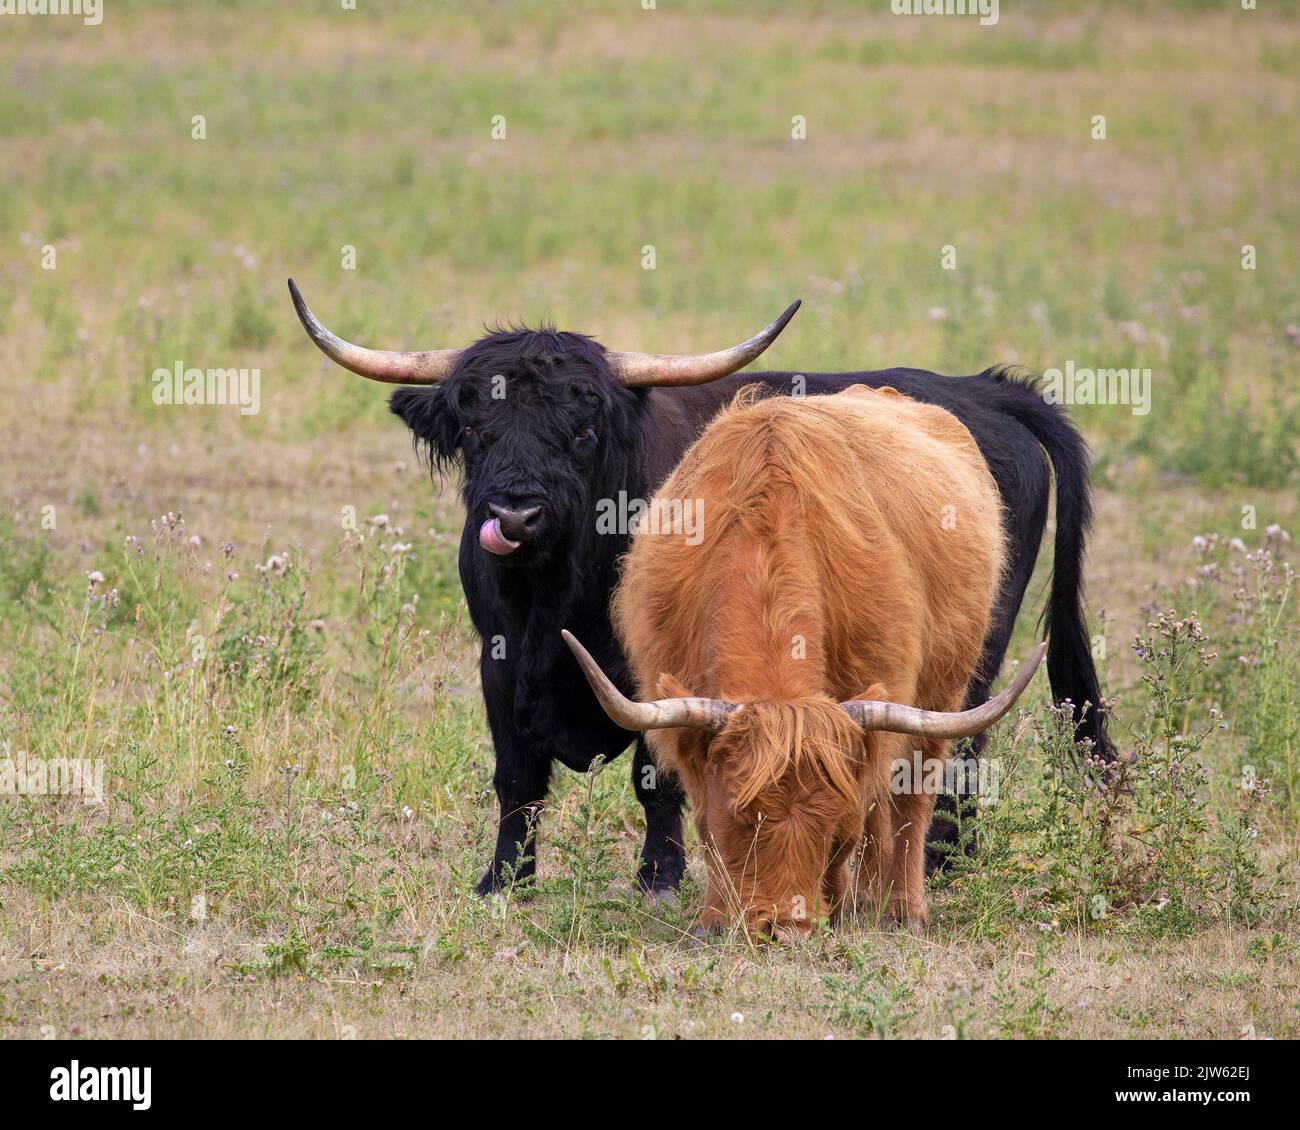 Vaca roja de las tierras altas pastando en un campo, con un toro negro de las tierras altas lamiéndose la nariz Foto de stock